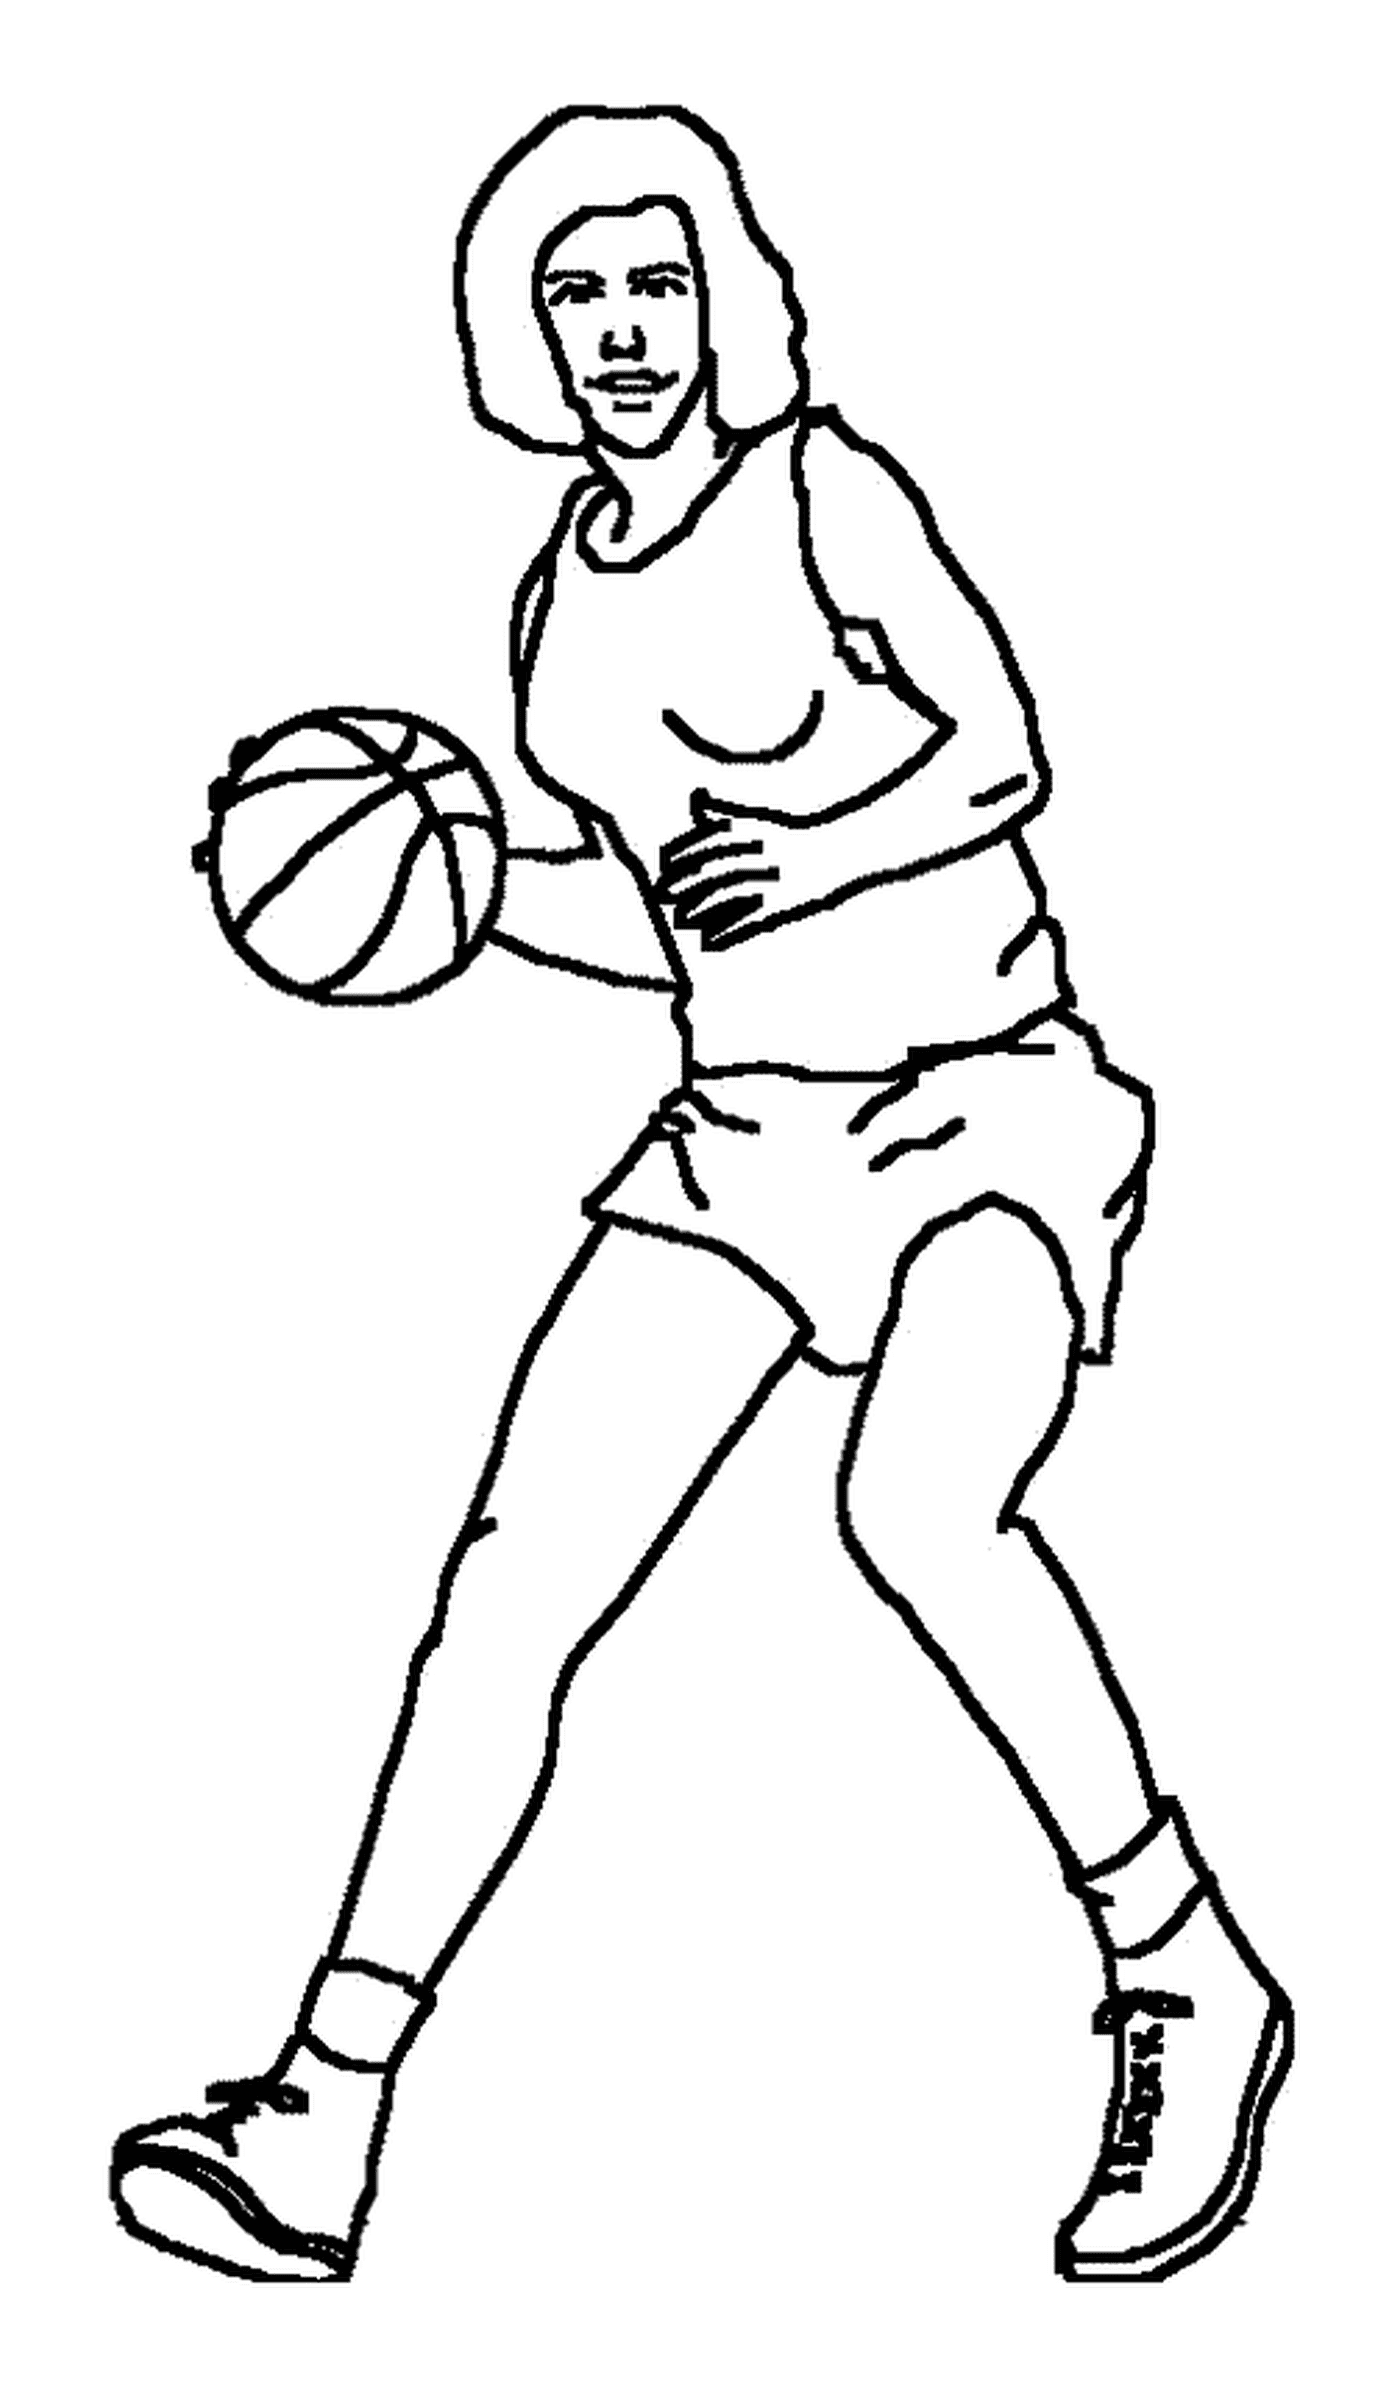  Баскетболист с мячом 